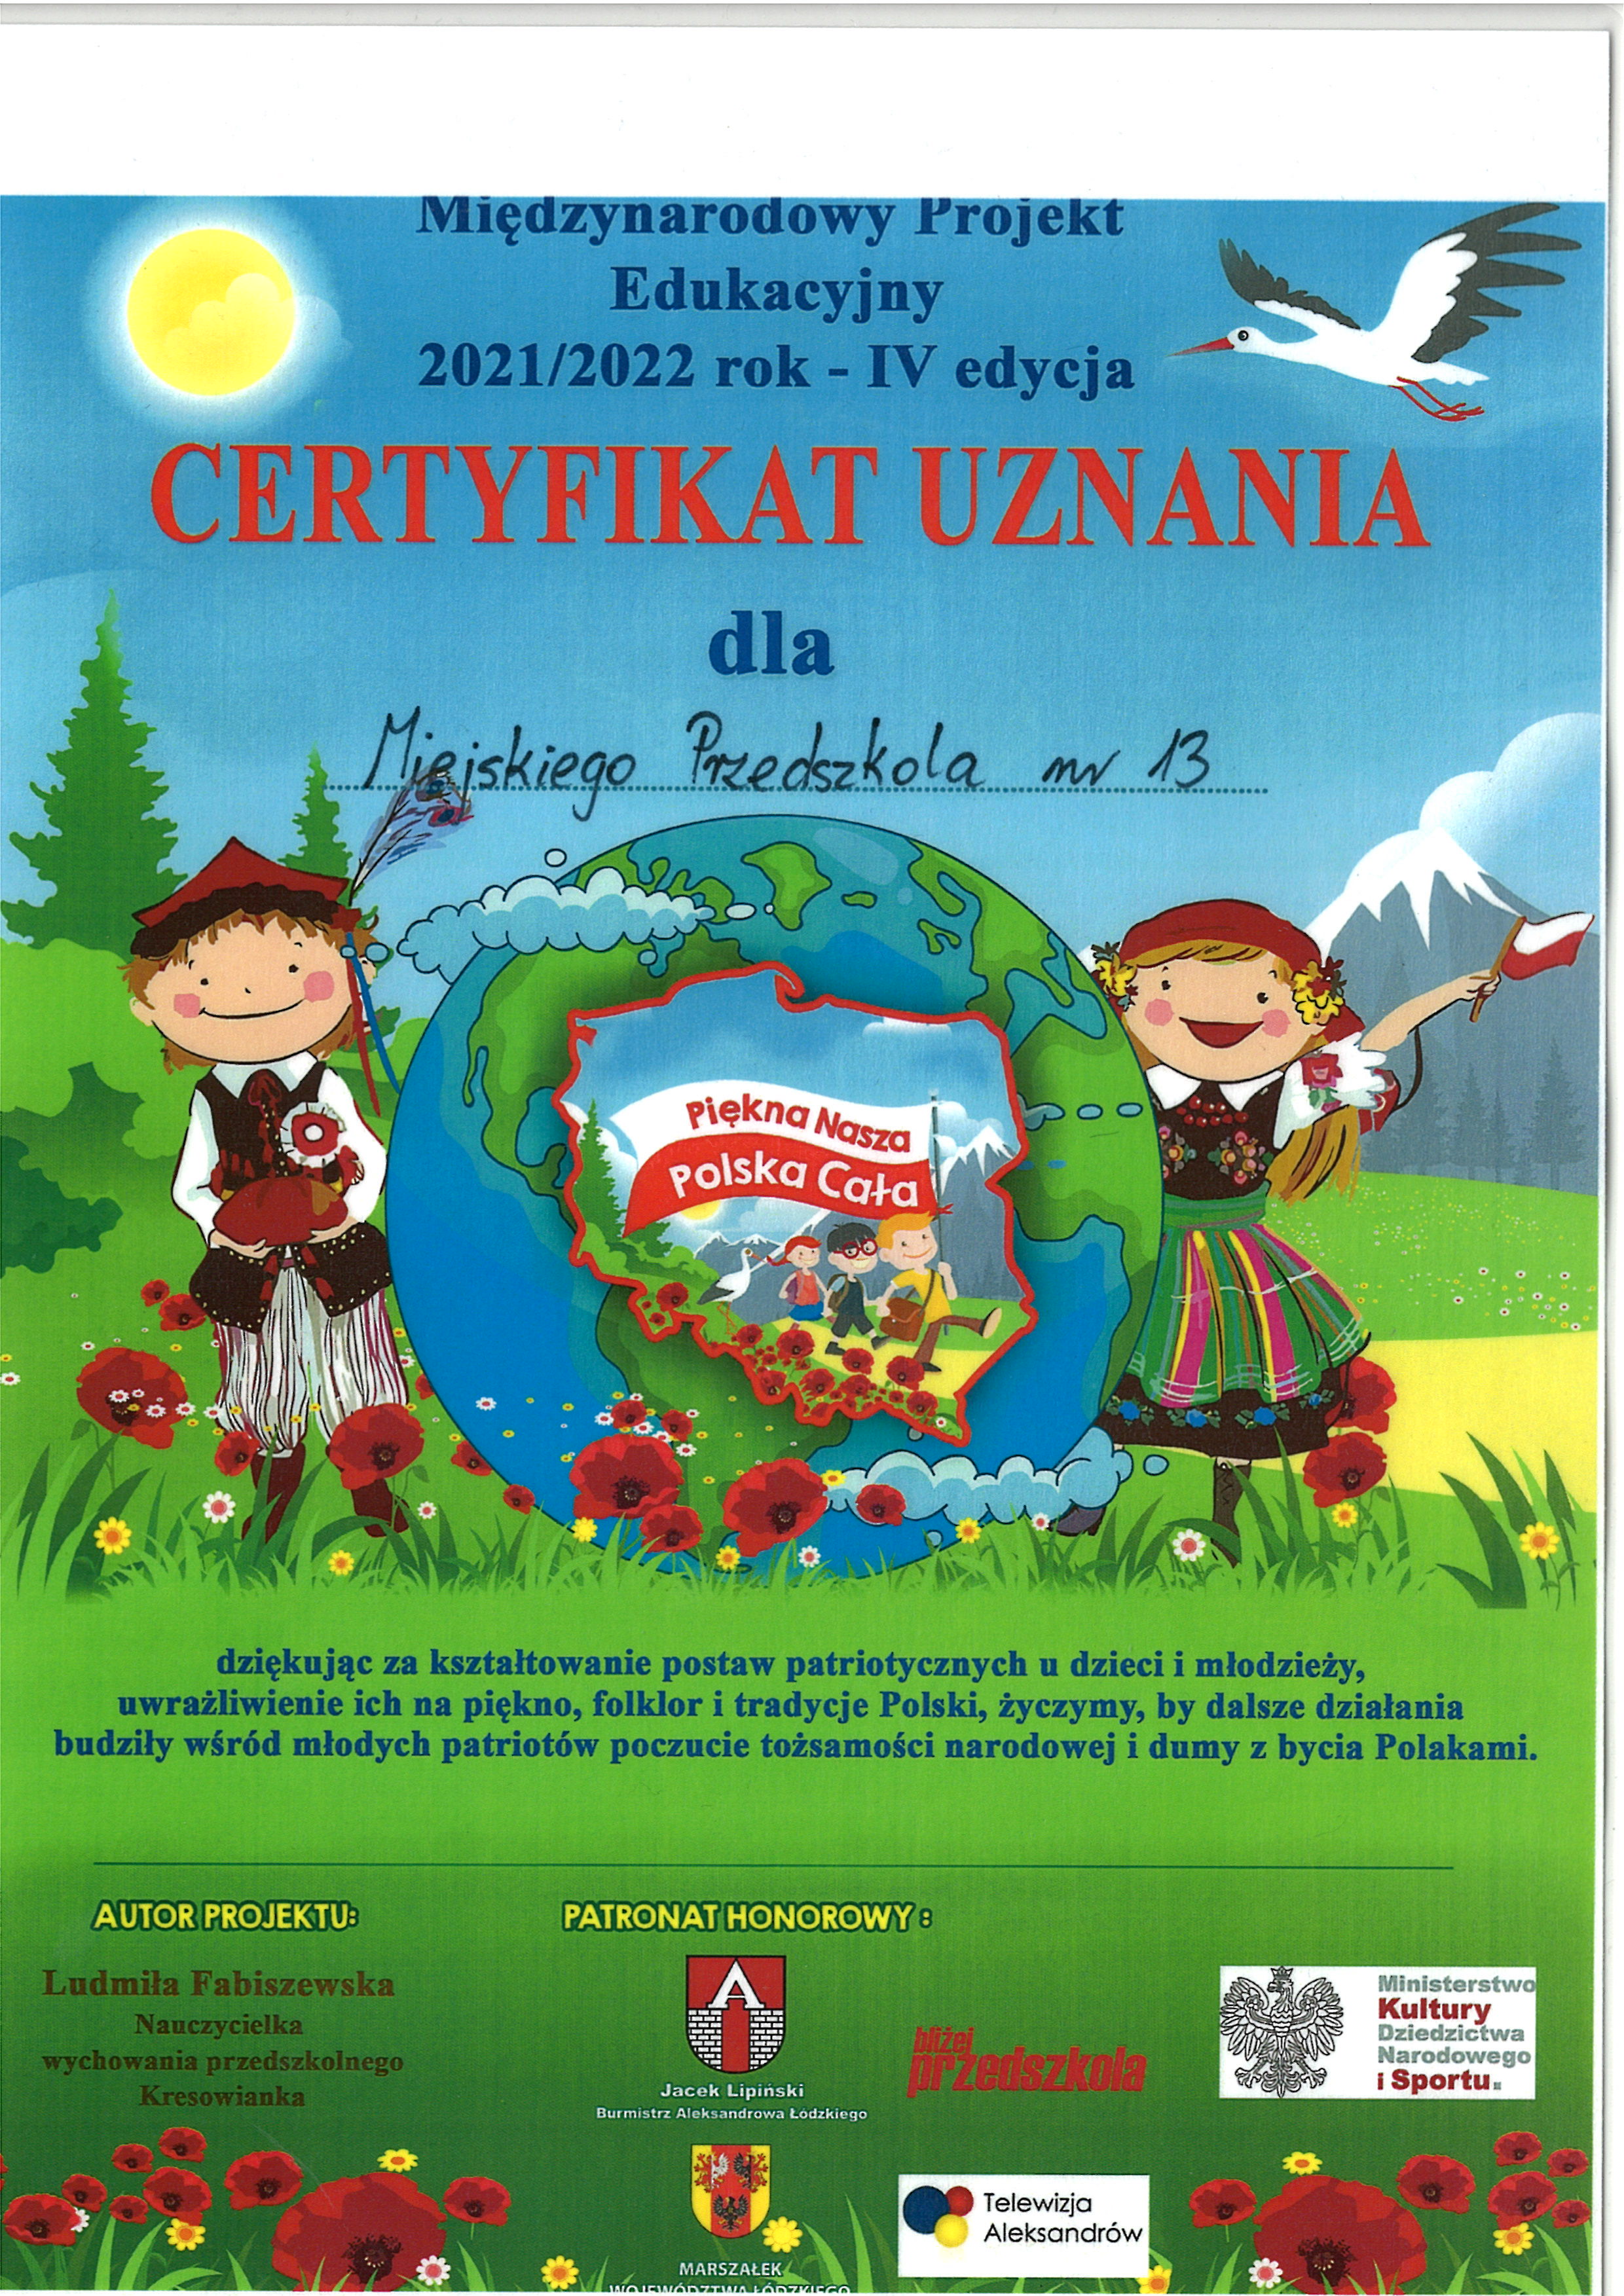 Certyfikat uznania dla Miejskiego Przedszkola nr 13 w Zgierzu za udział w Międzynarodowym Projekcie Piękna Nasza Polska Cała